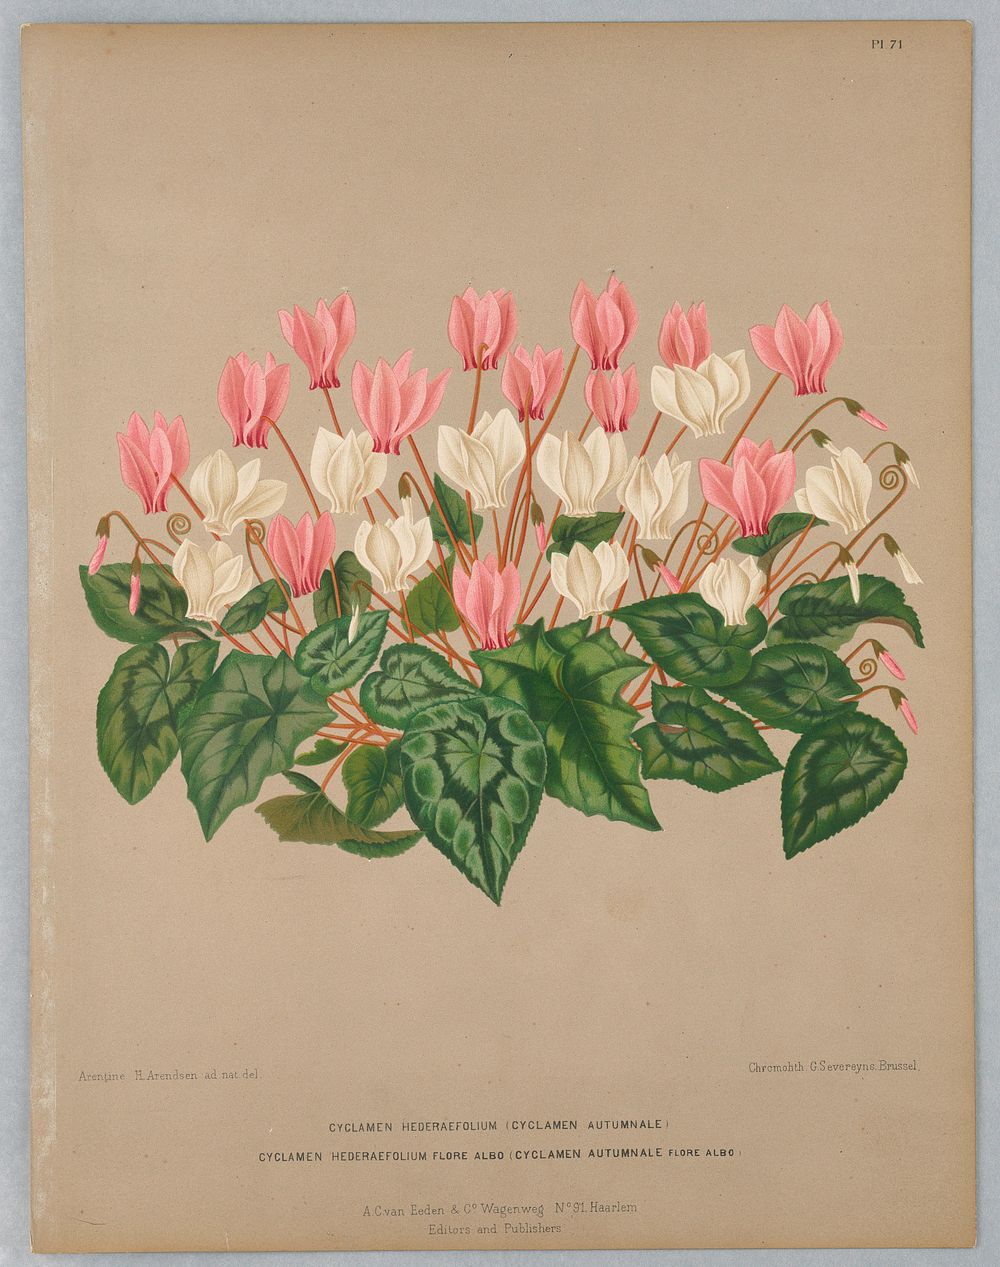 Cyclamen Hederaefolium and Cycla Hederaefolium Flore Albo, Plate 71 from A. C. Van Eeden's "Flora of Haarlem"